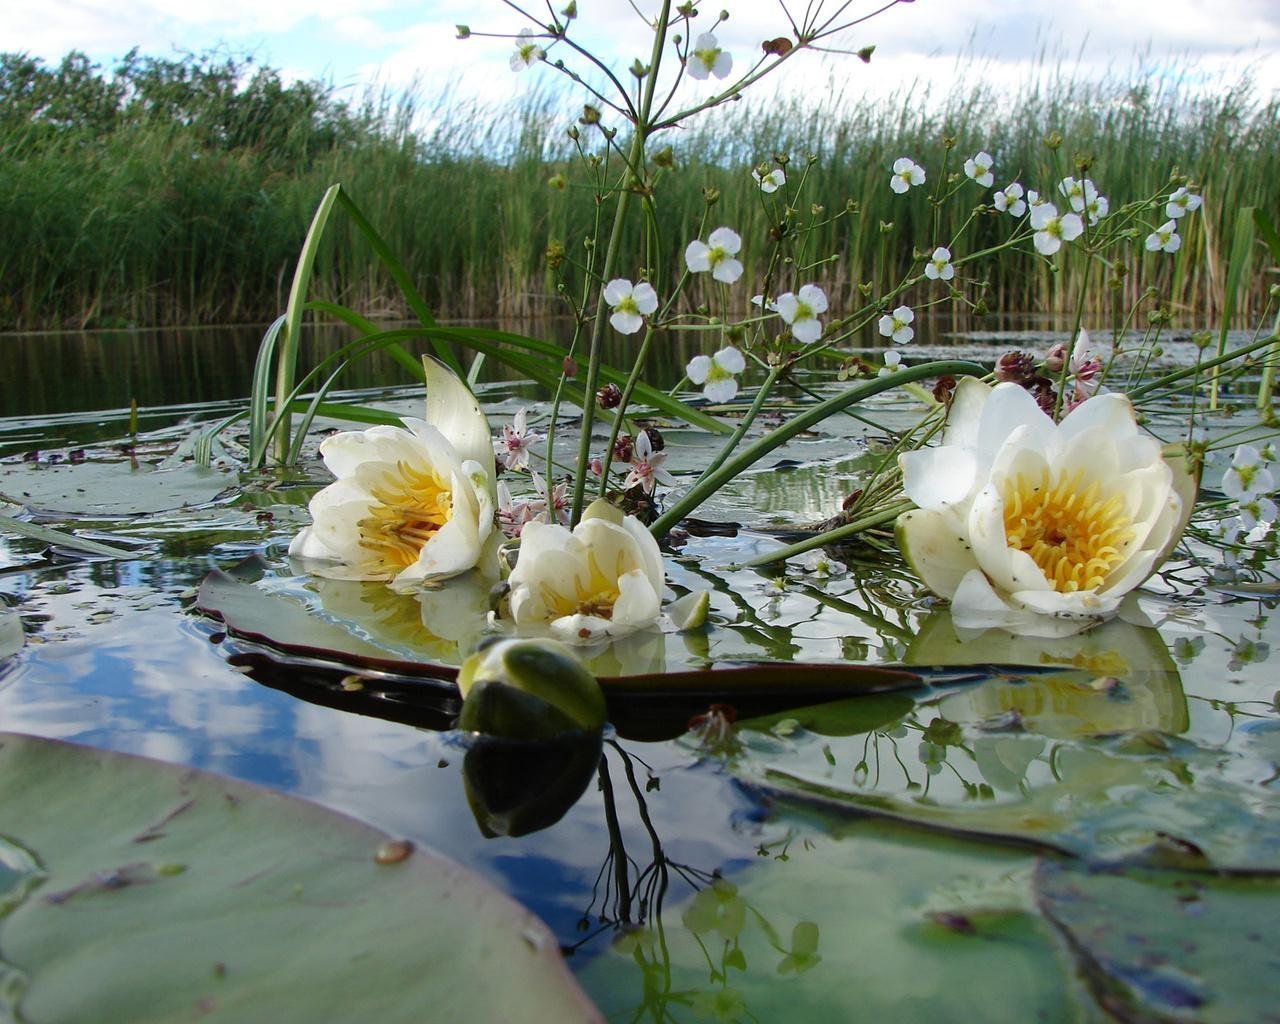 Описывая реку рыбалку траву цветы автор поднимает